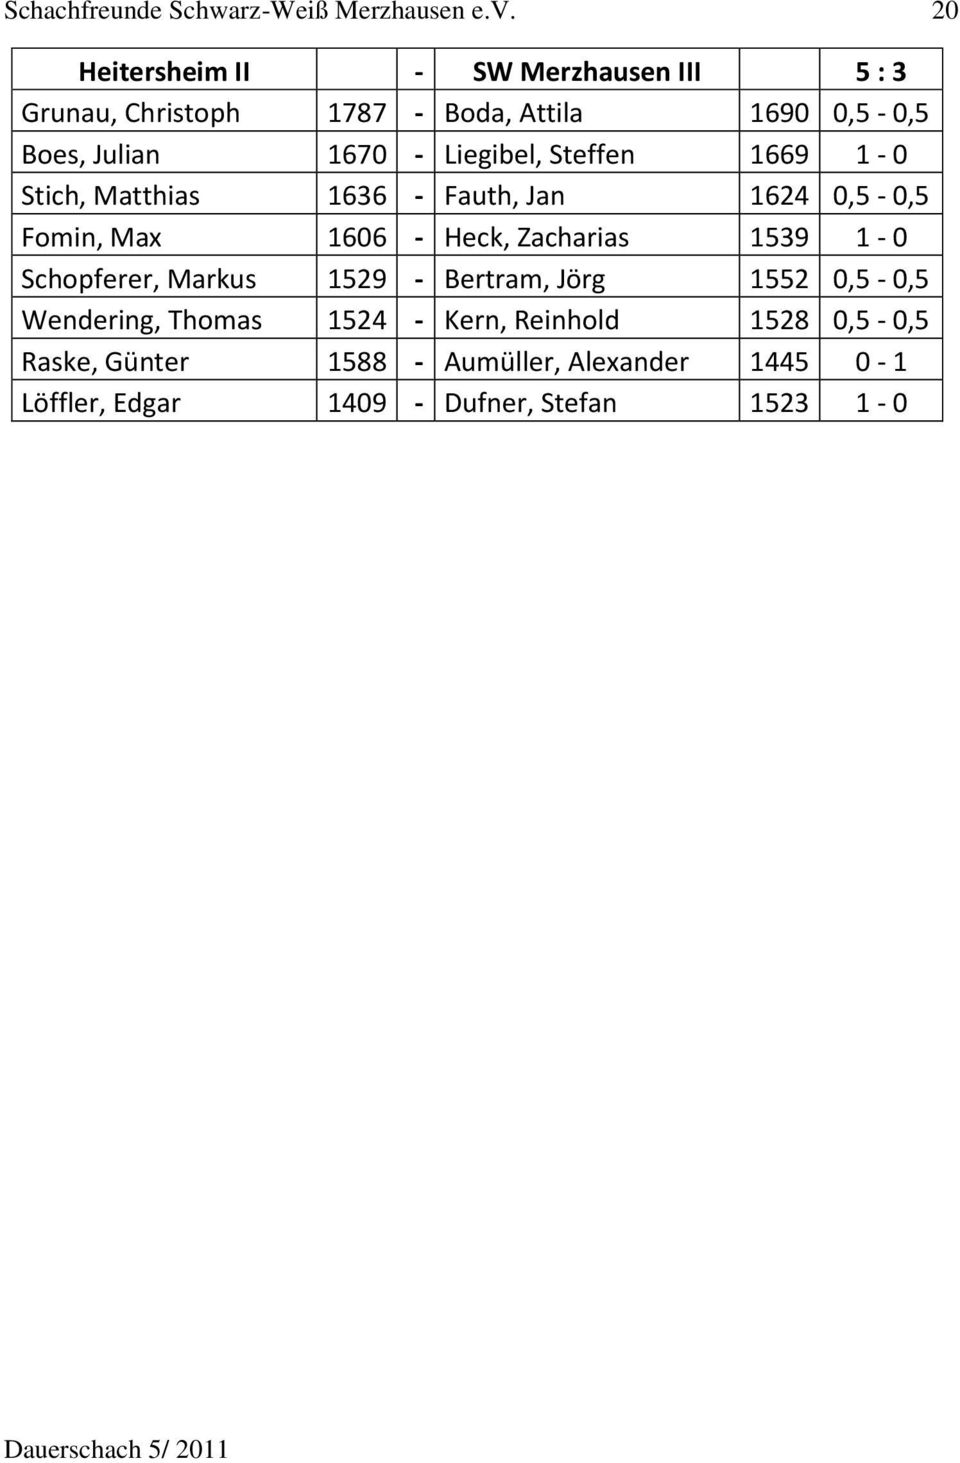 Liegibel, Steffen 1669 1-0 Stich, Matthias 1636 - Fauth, Jan 1624 0,5-0,5 Fomin, Max 1606 - Heck, Zacharias 1539 1-0